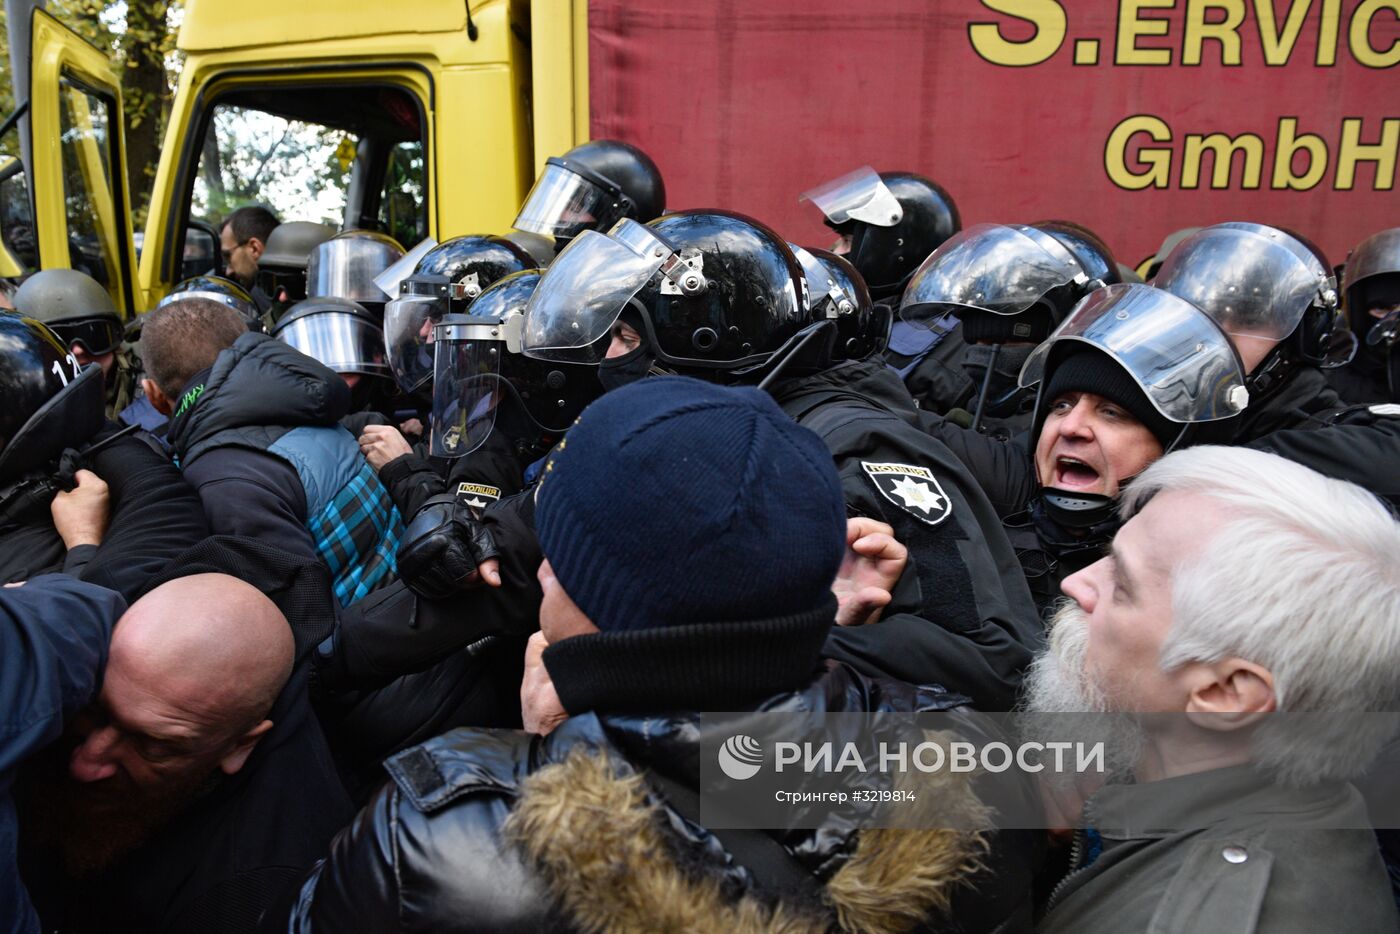 Митинг у здания Рады в Киеве